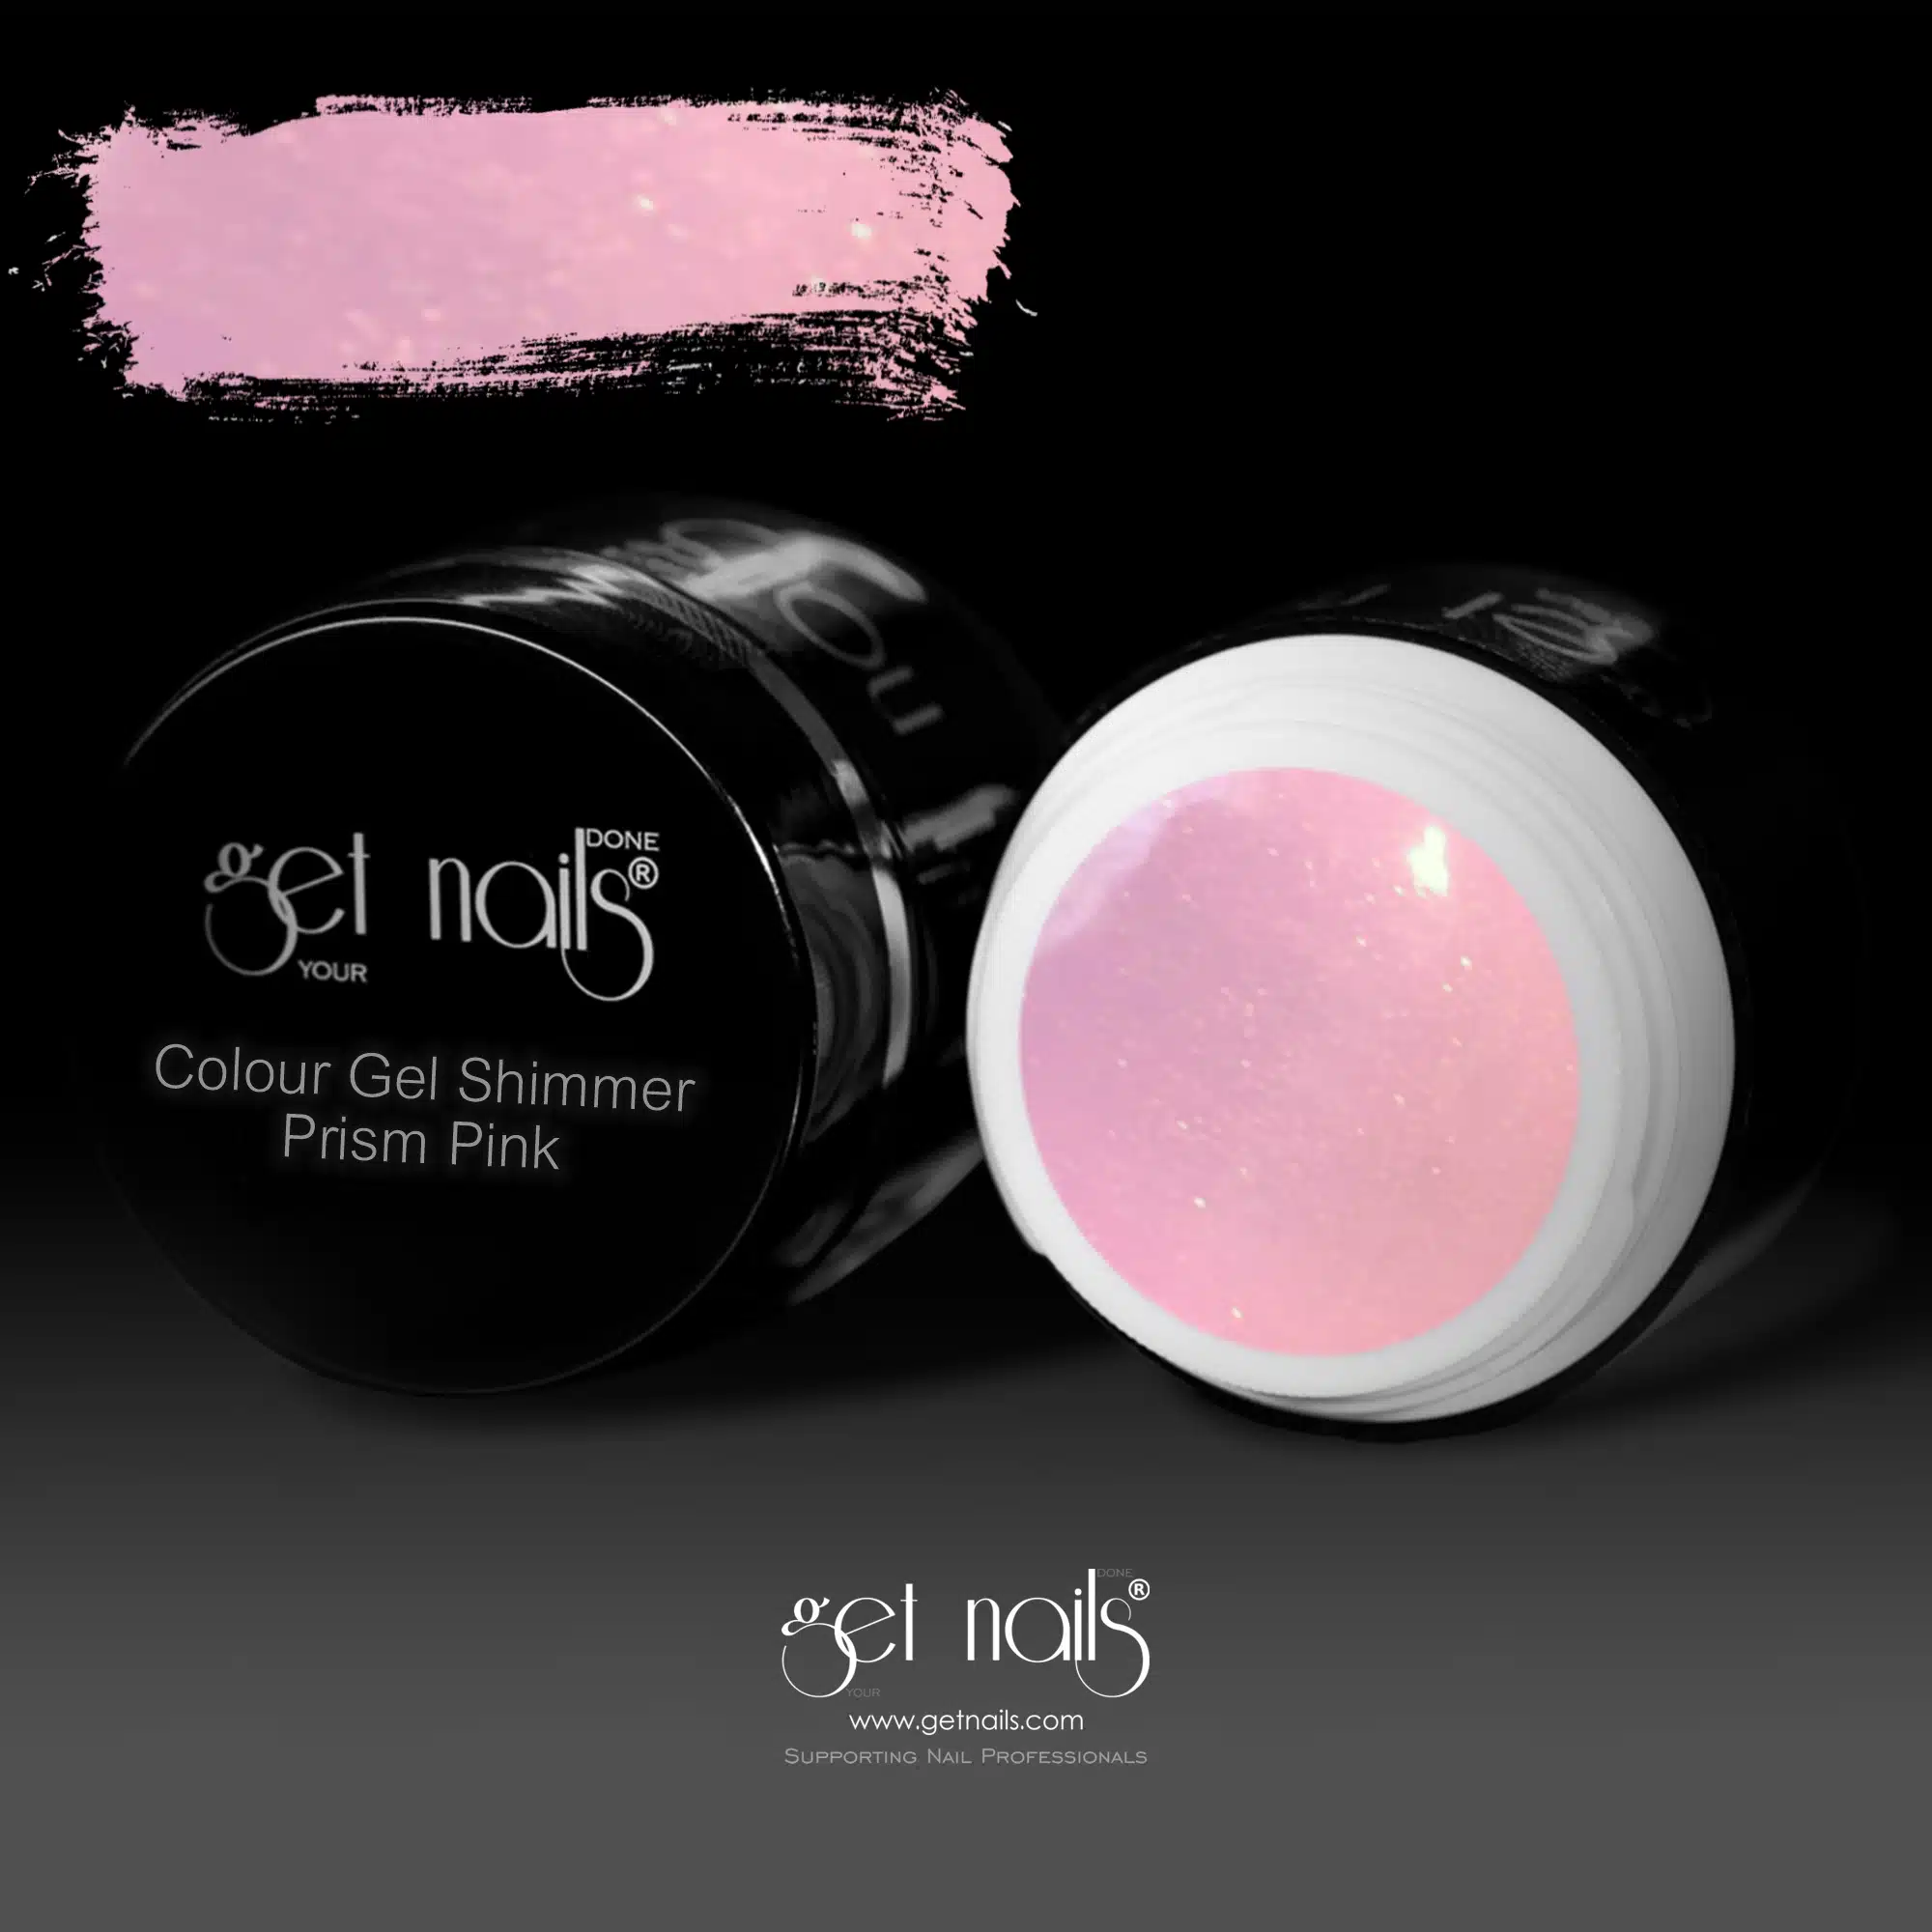 Get Nails Austria - Color Gel Shimmer Prism Pink 5g